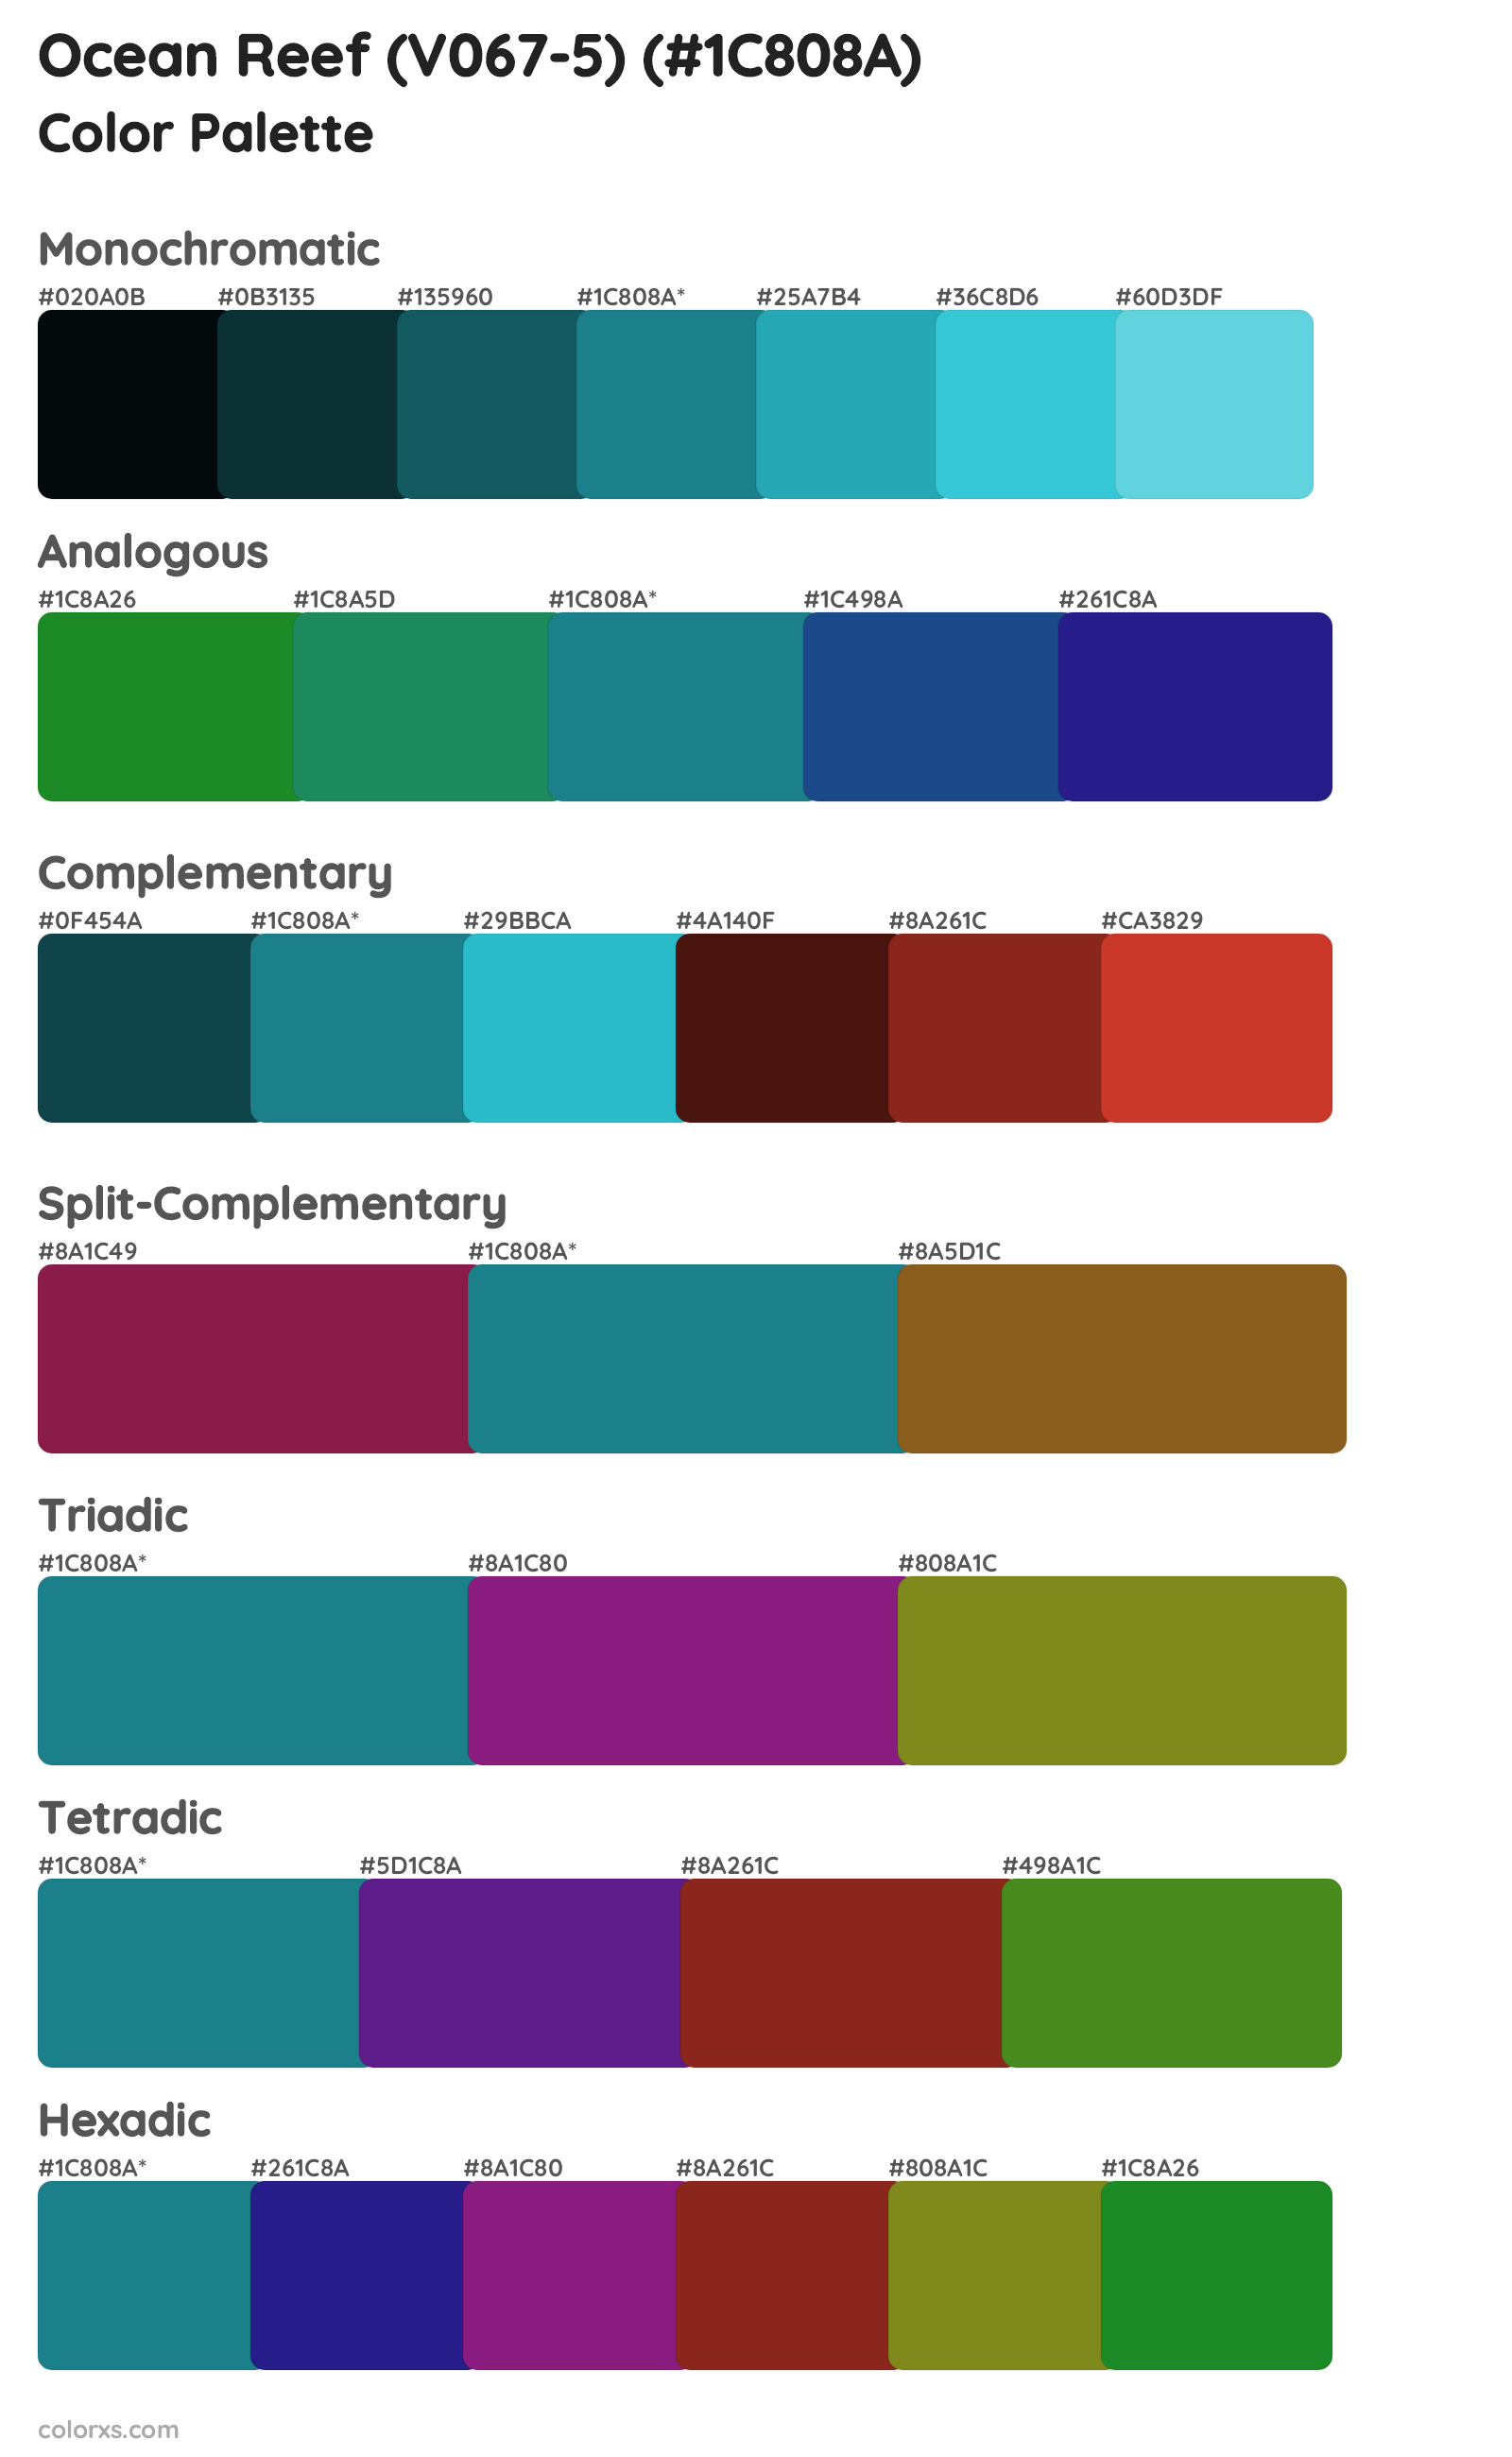 Ocean Reef (V067-5) Color Scheme Palettes